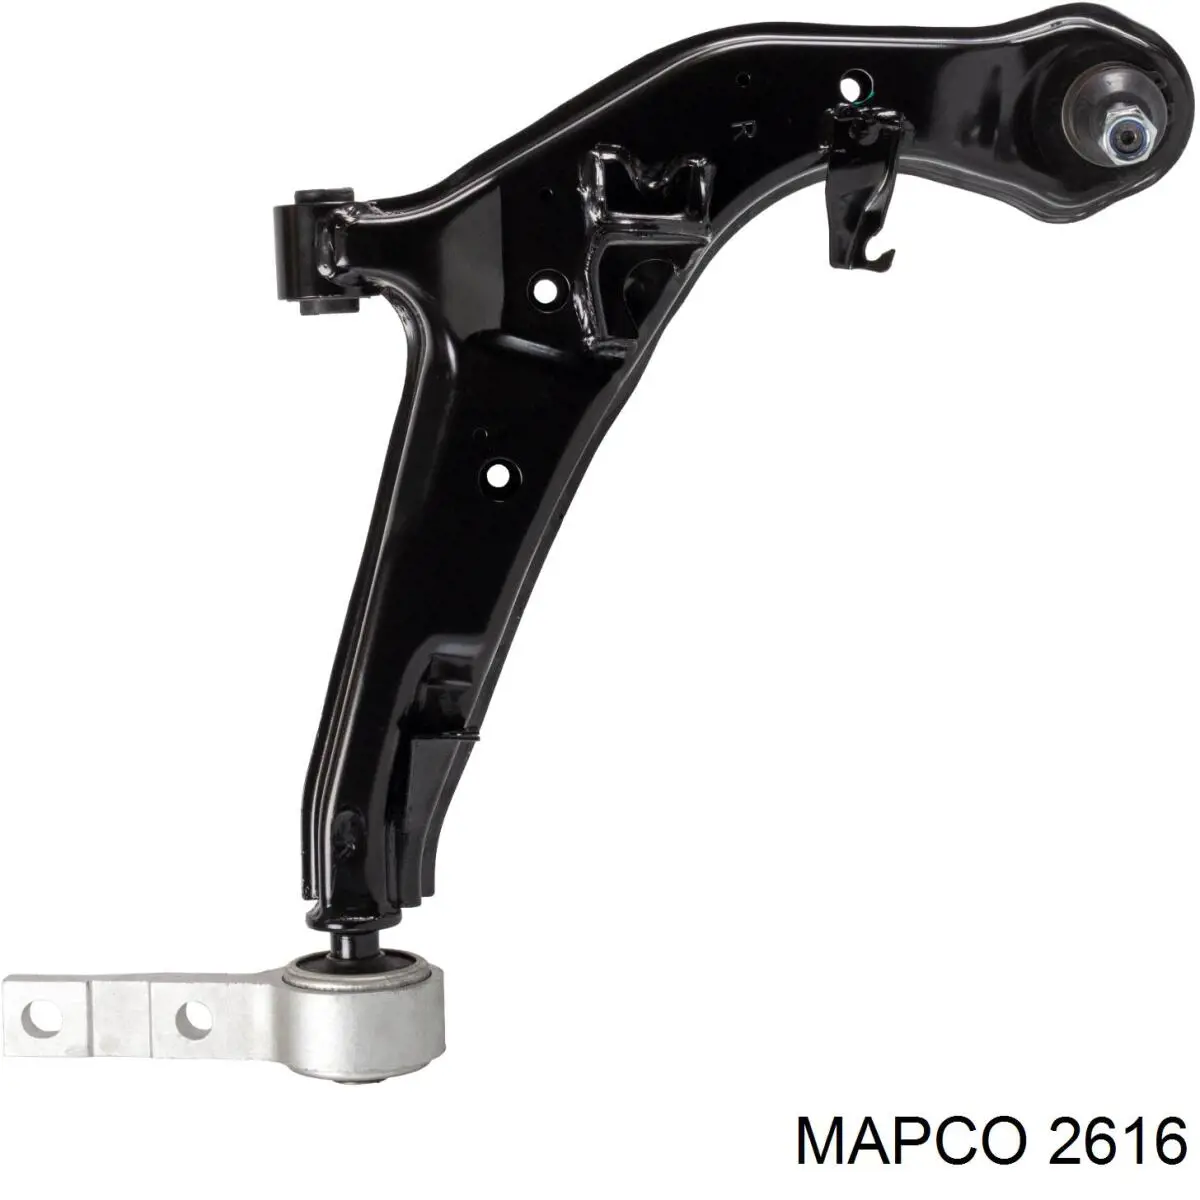 2616 Mapco cilindro de freno de rueda trasero